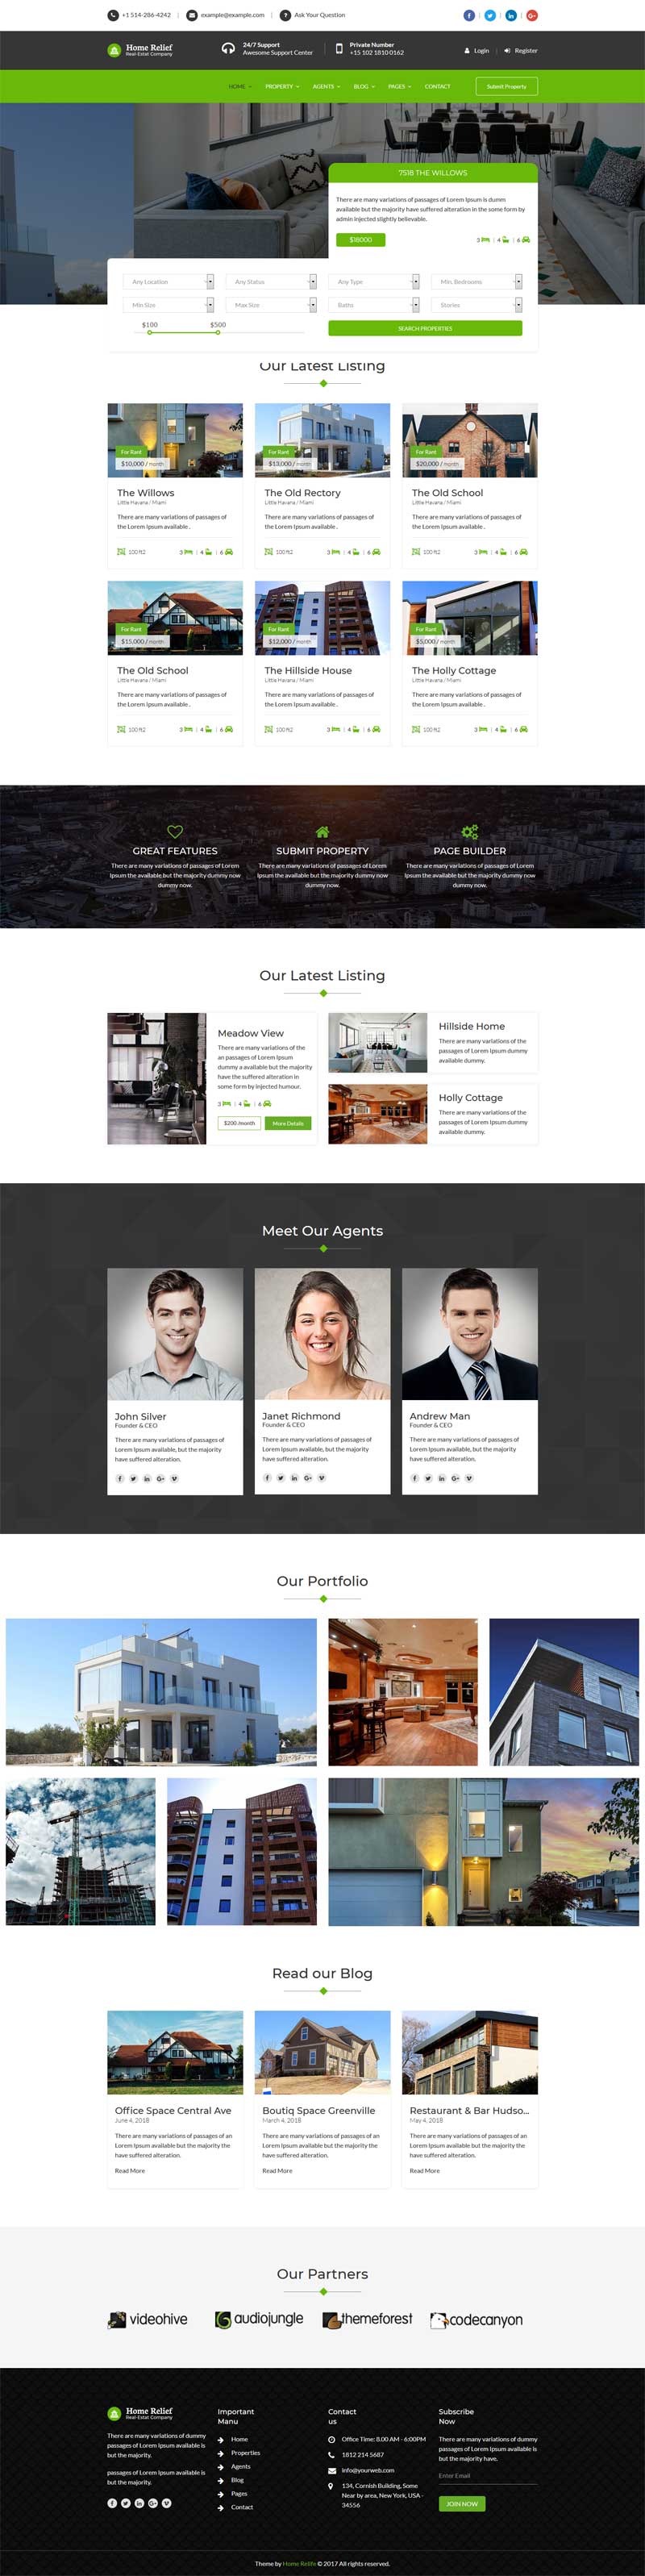 绿色Bootstrap响应式房产中介网站模板